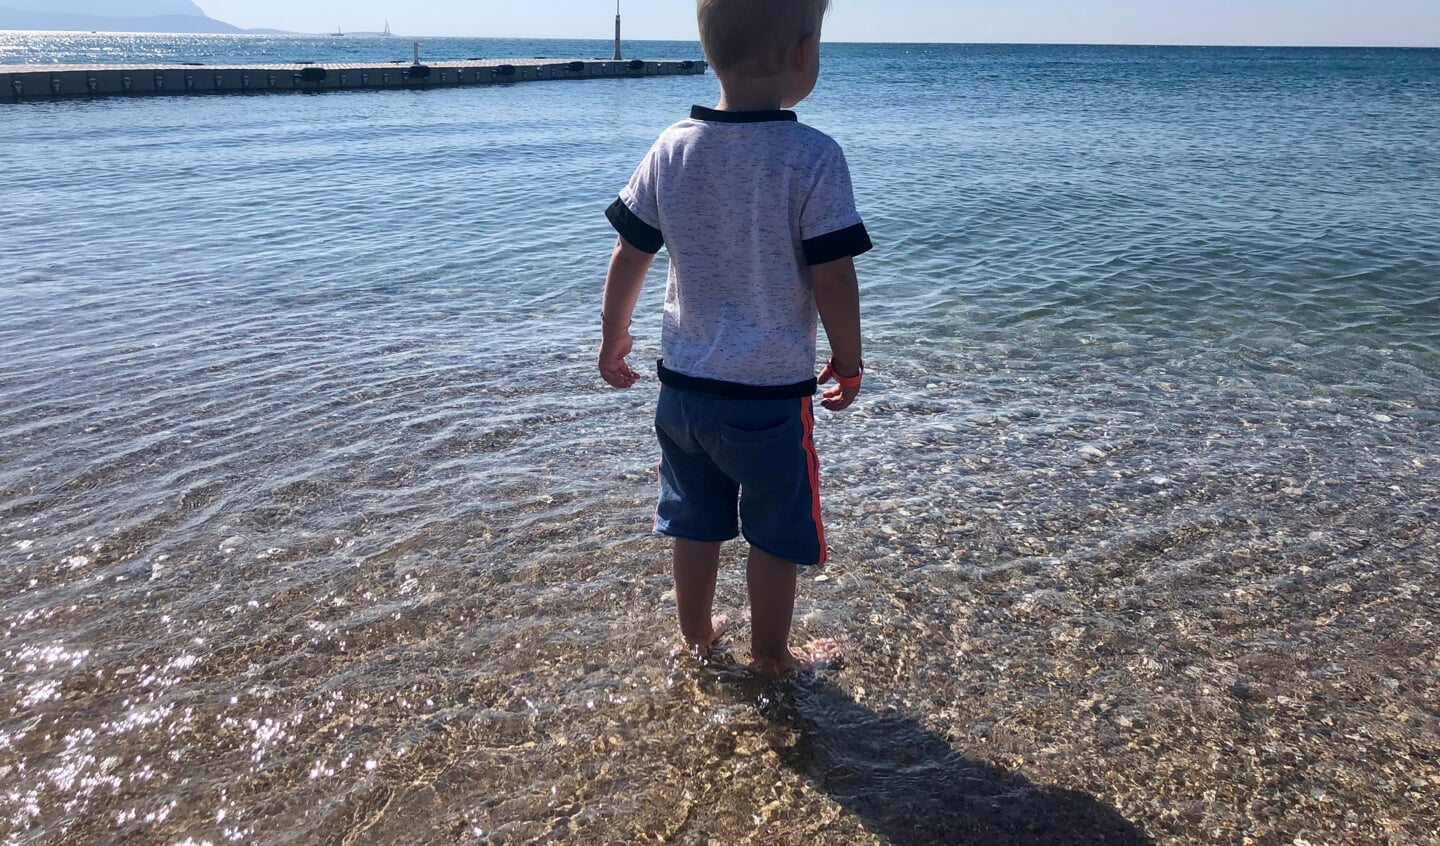 ,,Wij mochten dit jaar op vakantie naar Samos, een eiland van het mooie Griekenland. Onze zoon Dave is gek op water en kon dan ook eindeloos genieten van dit uitzicht. Net als wijzelf overigens. 